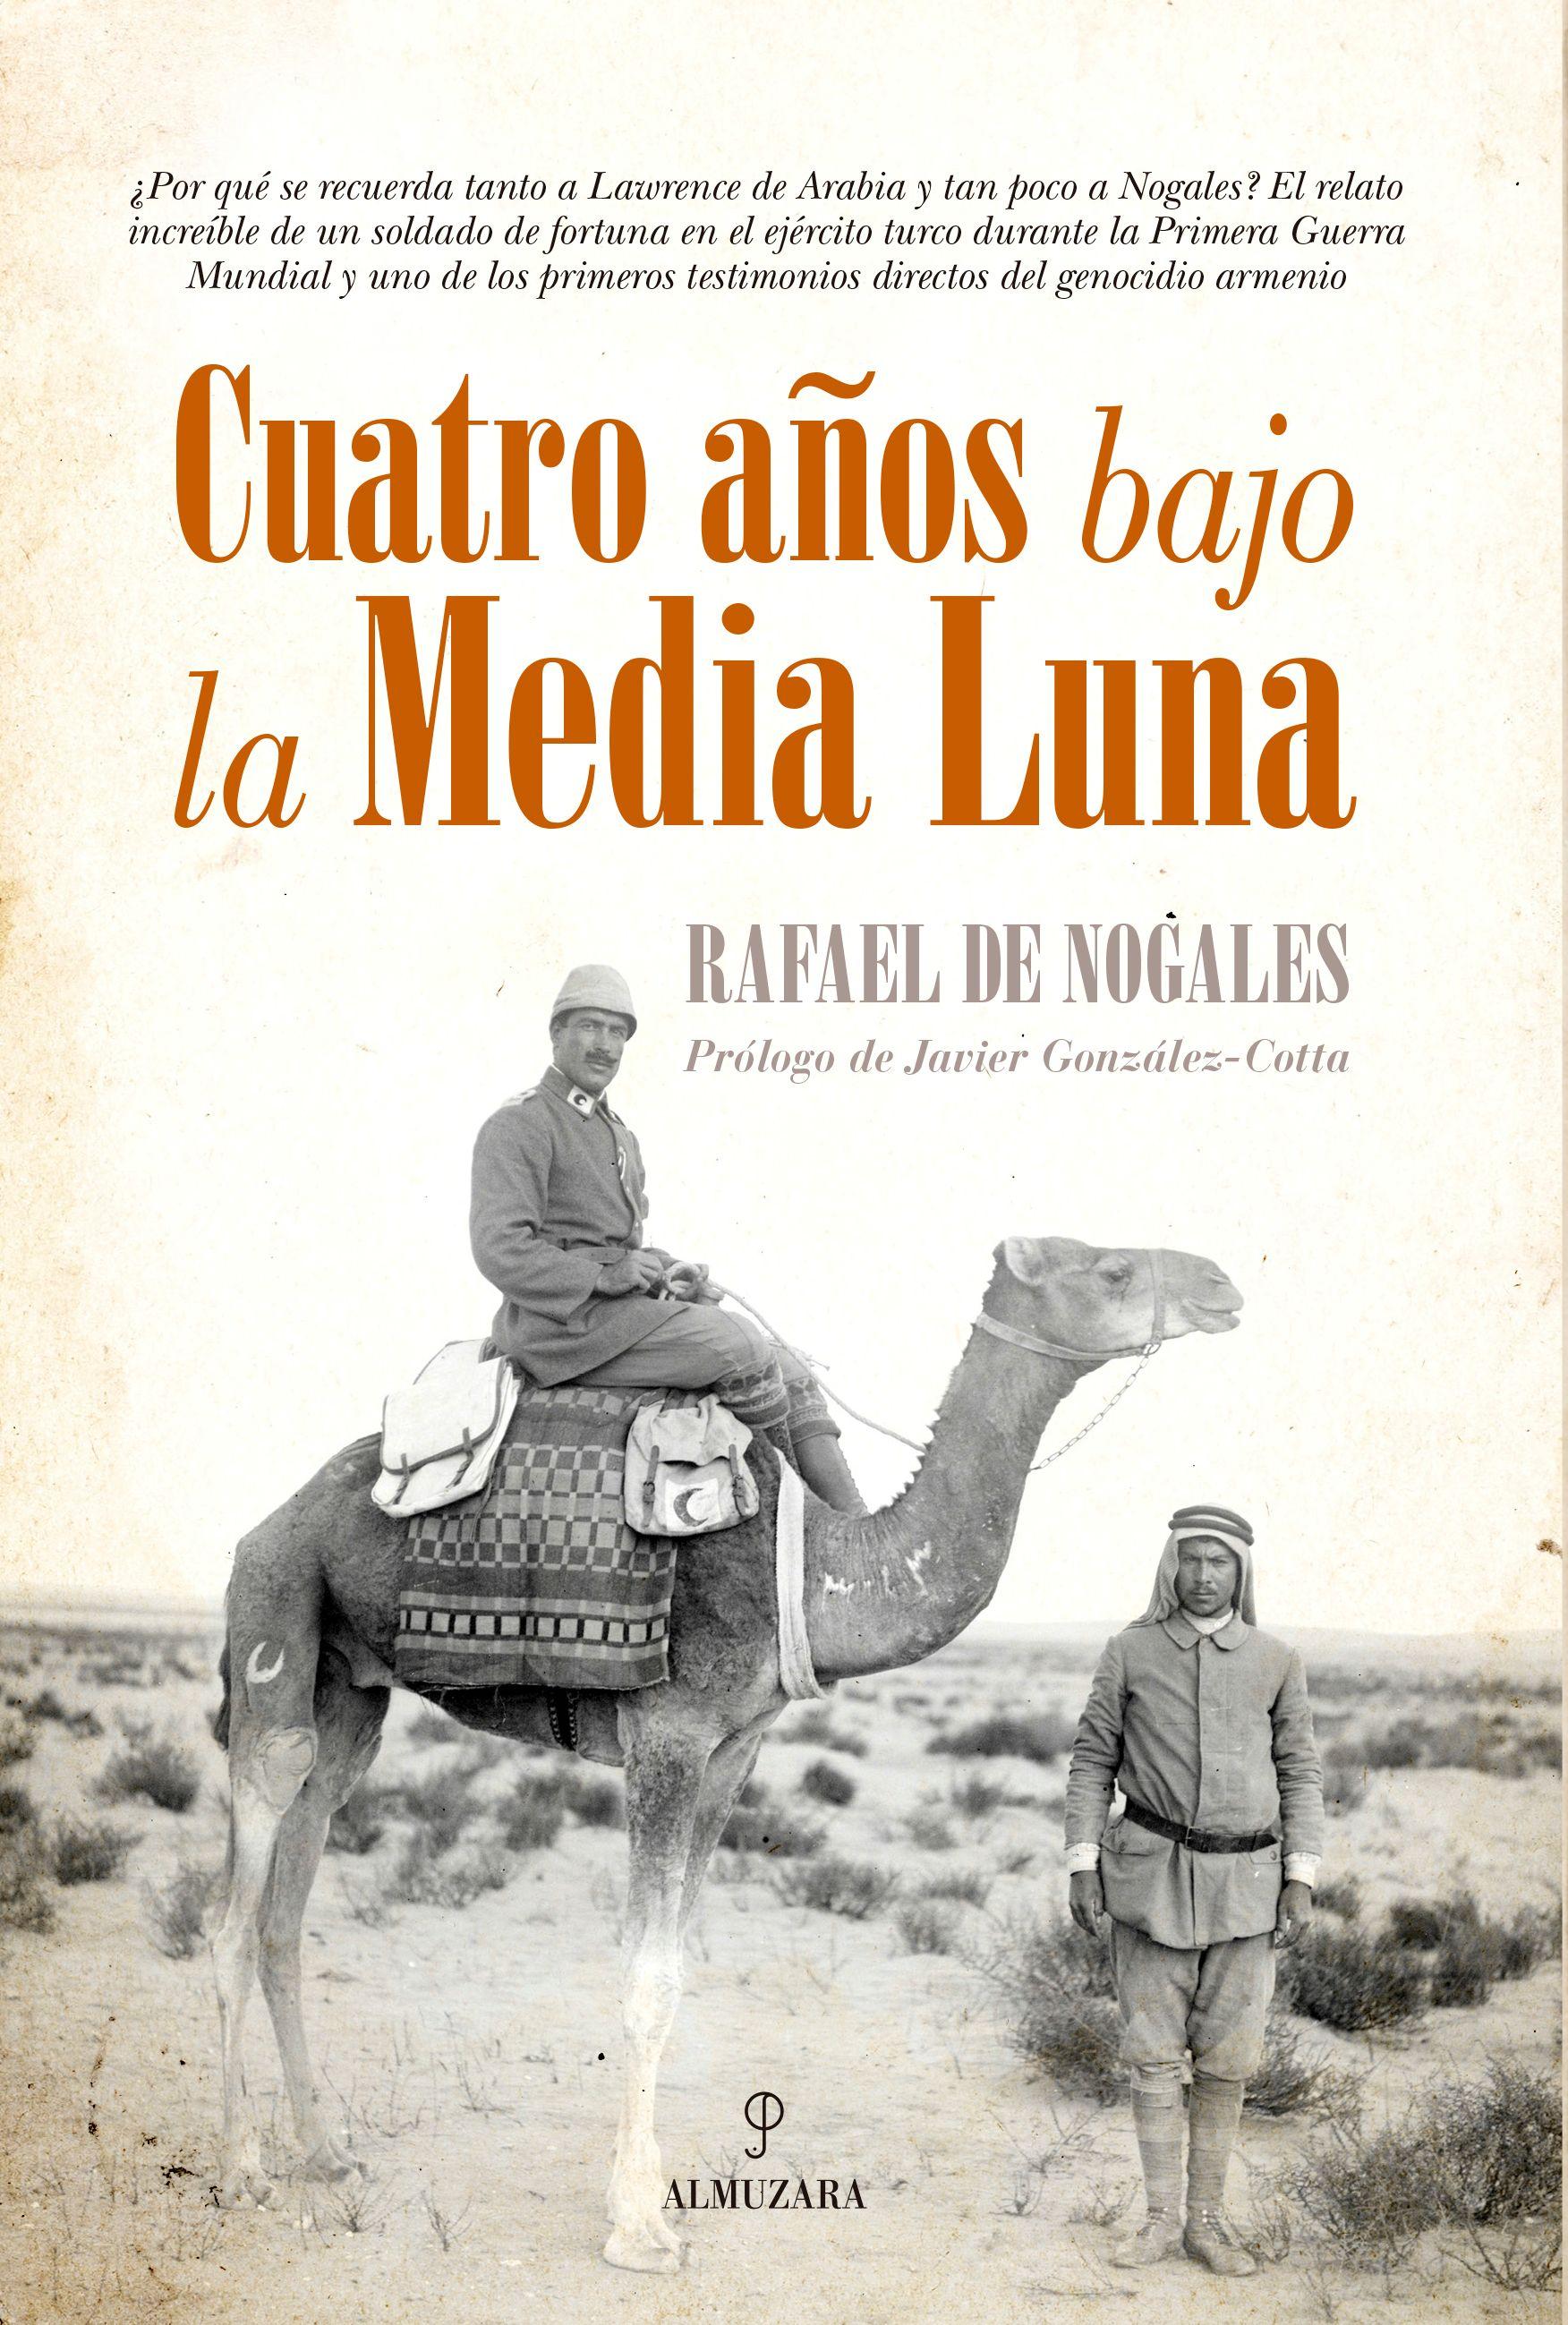 Portada de la autobiografía "Cuatro años bajo la Media Luna" de Rafael de Nogales Méndez.